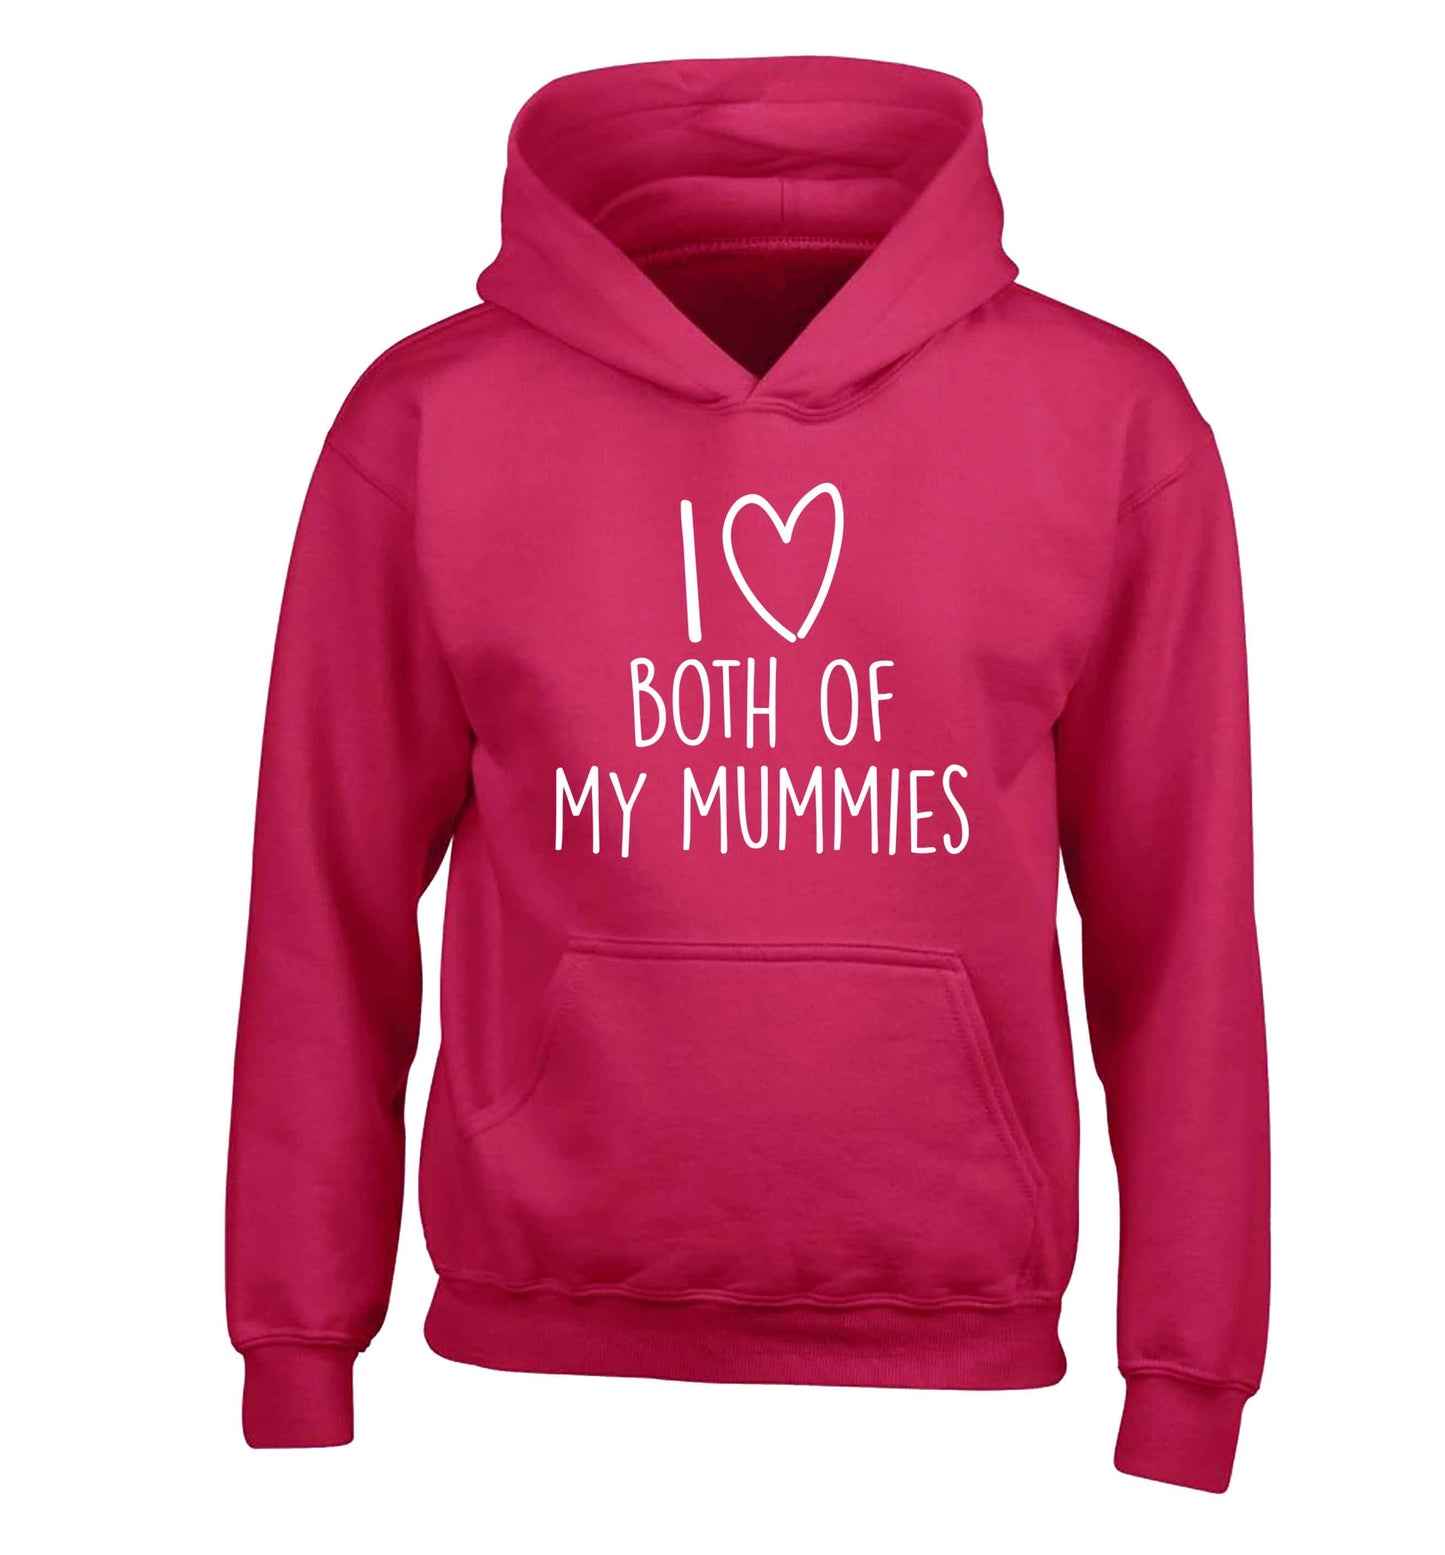 I love both of my mummies children's pink hoodie 12-13 Years